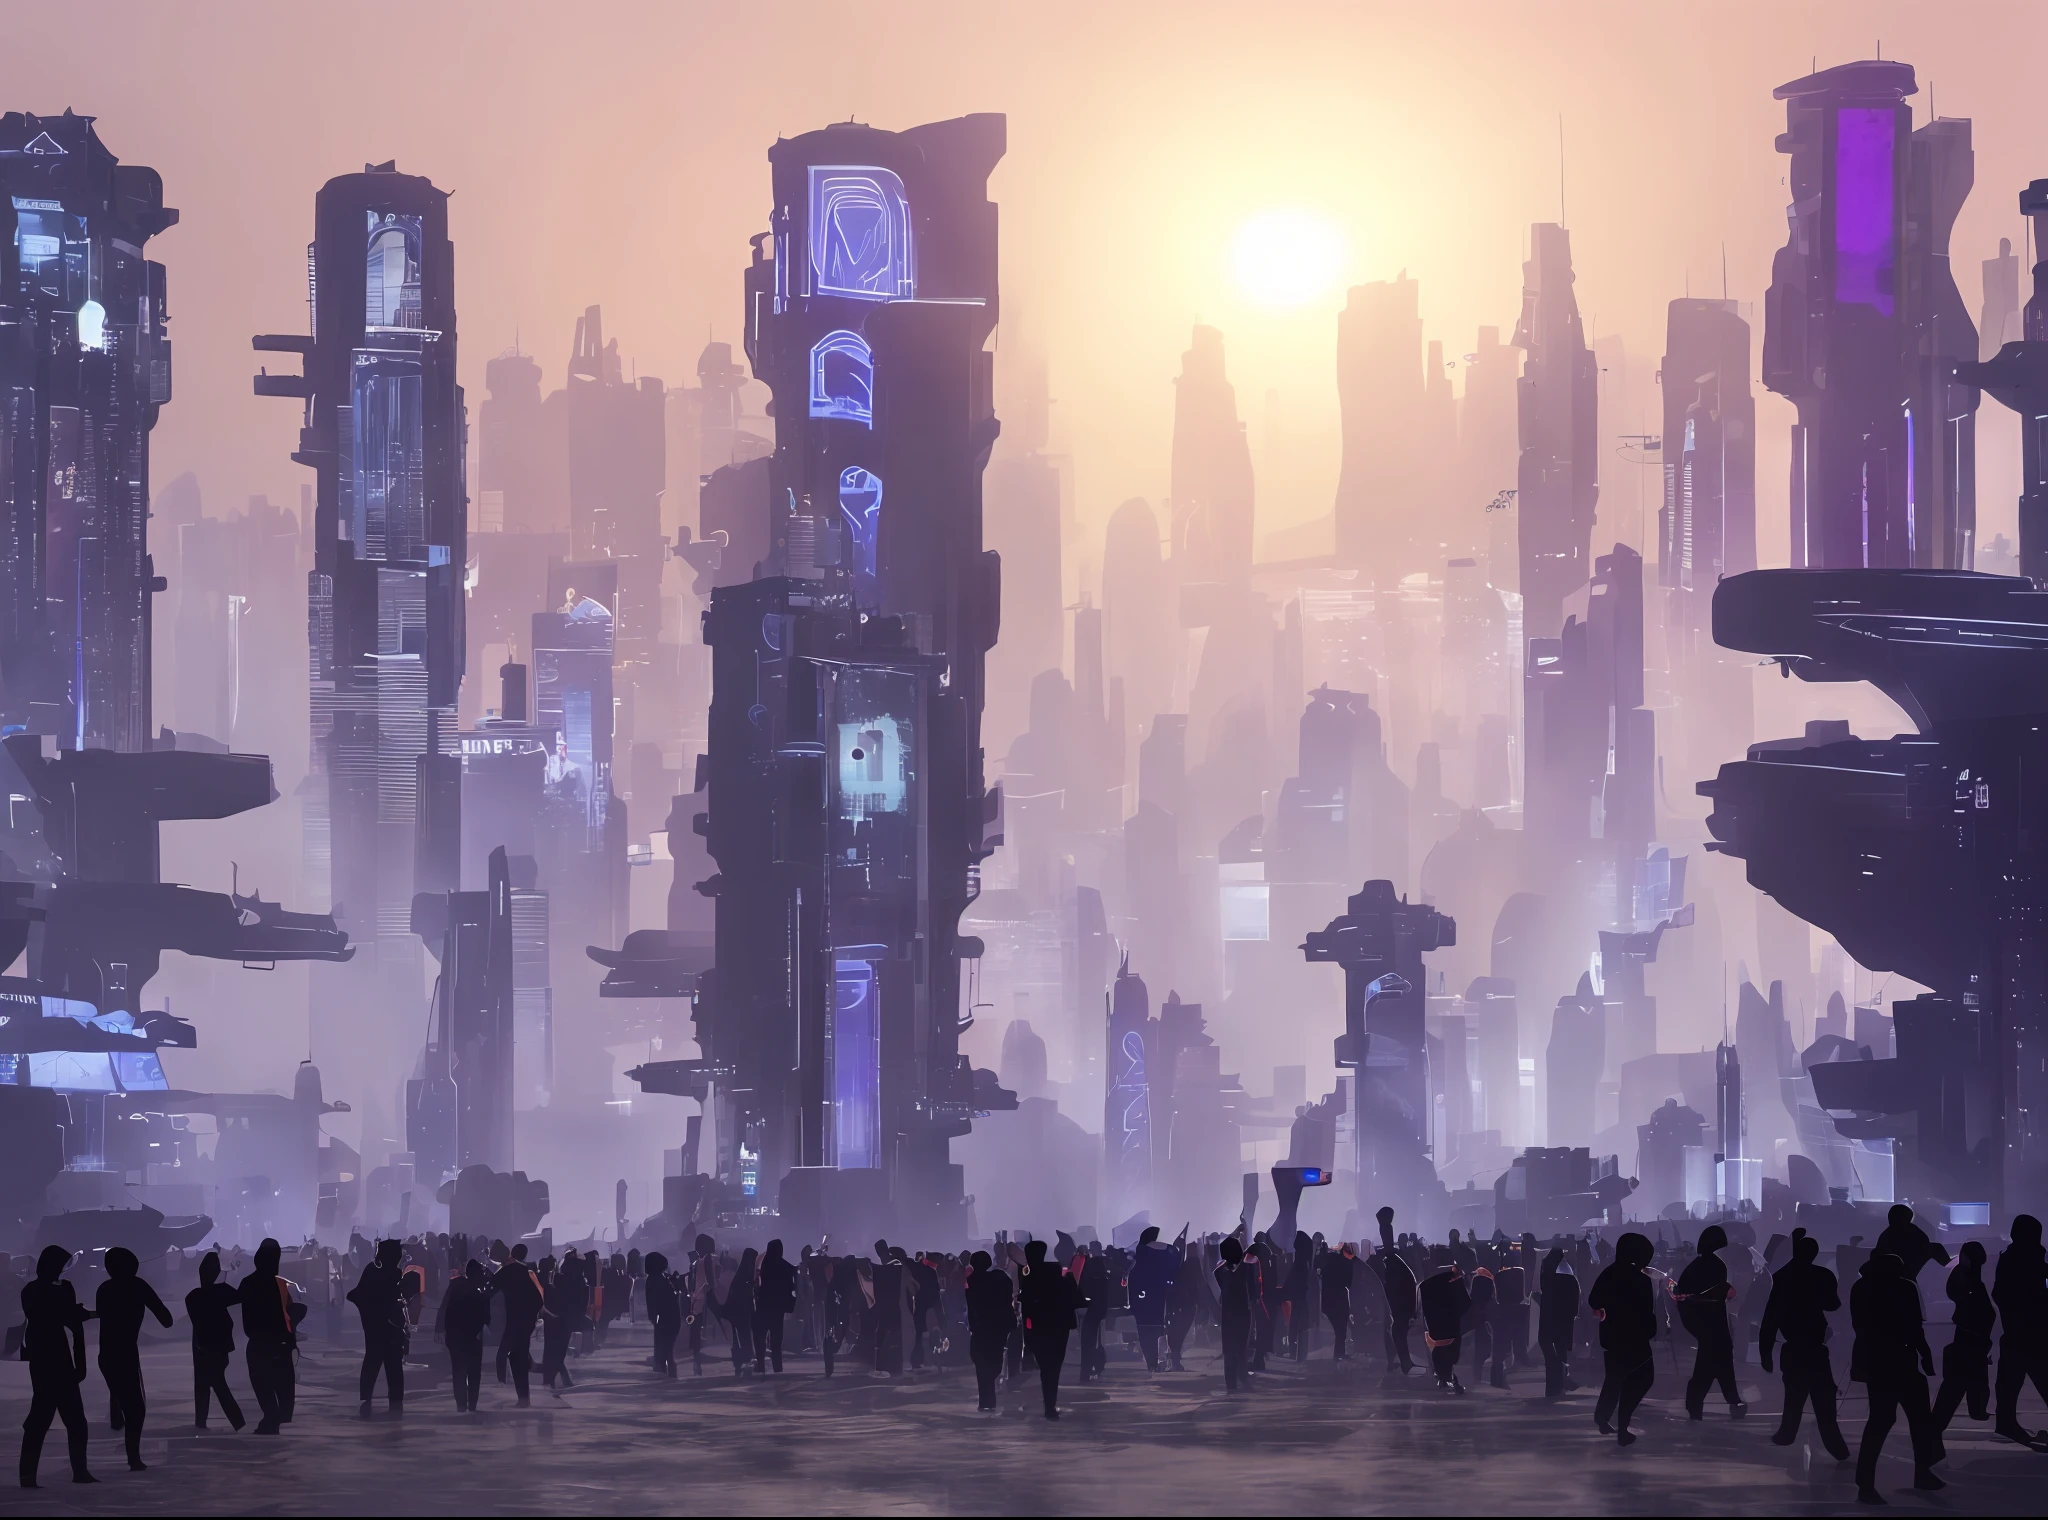 العديد من الكائنات الفضائية بأجساد تشبه البشر, مسيرة في المدينة السيبرانية المستقبلية